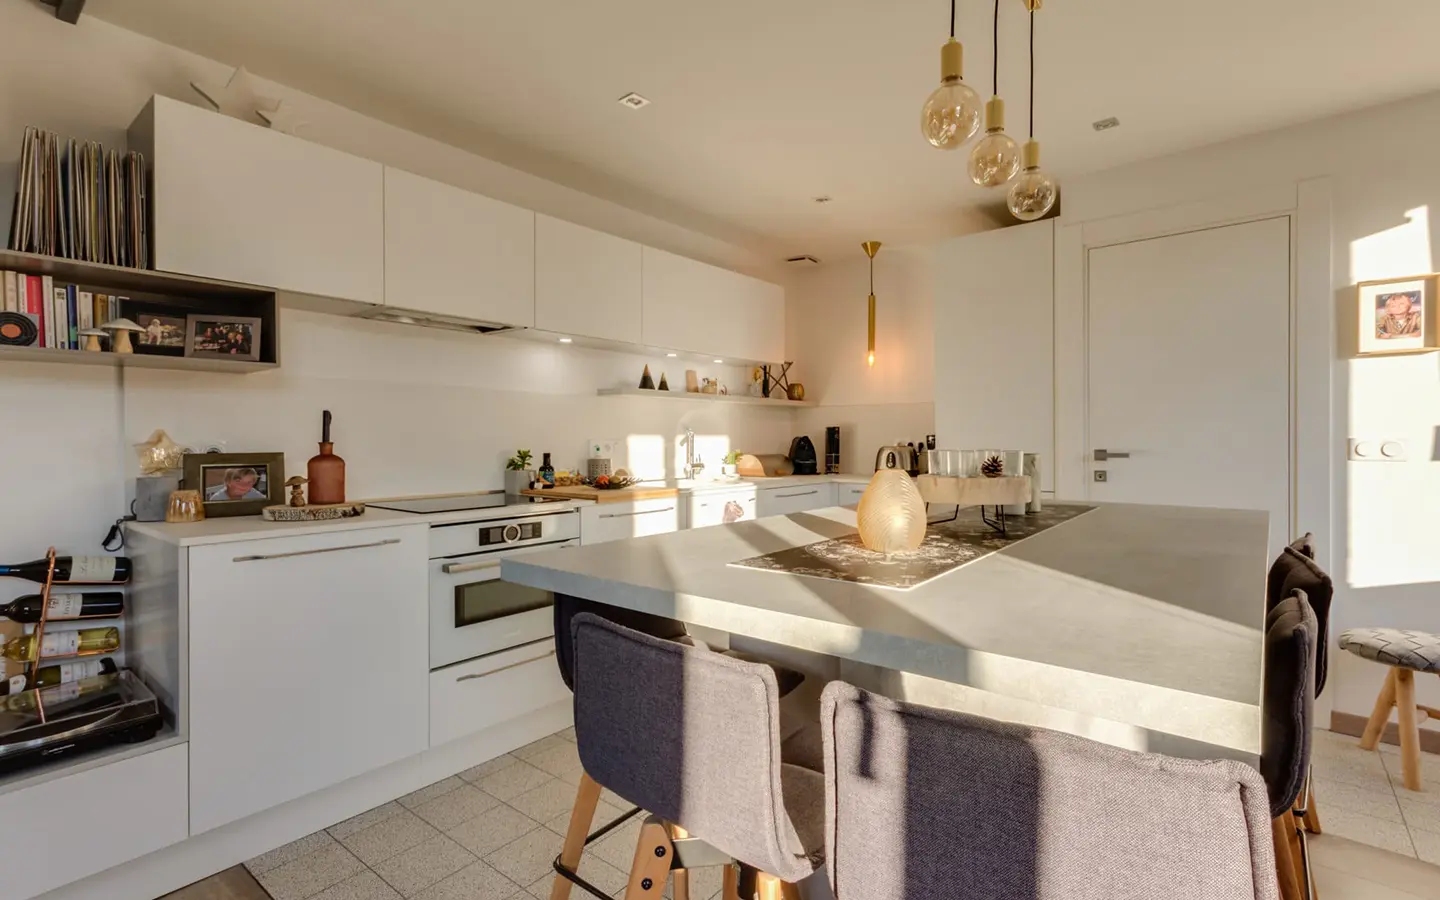 Achat immobilier appartement duplex Annecy-le-vieux cuisine